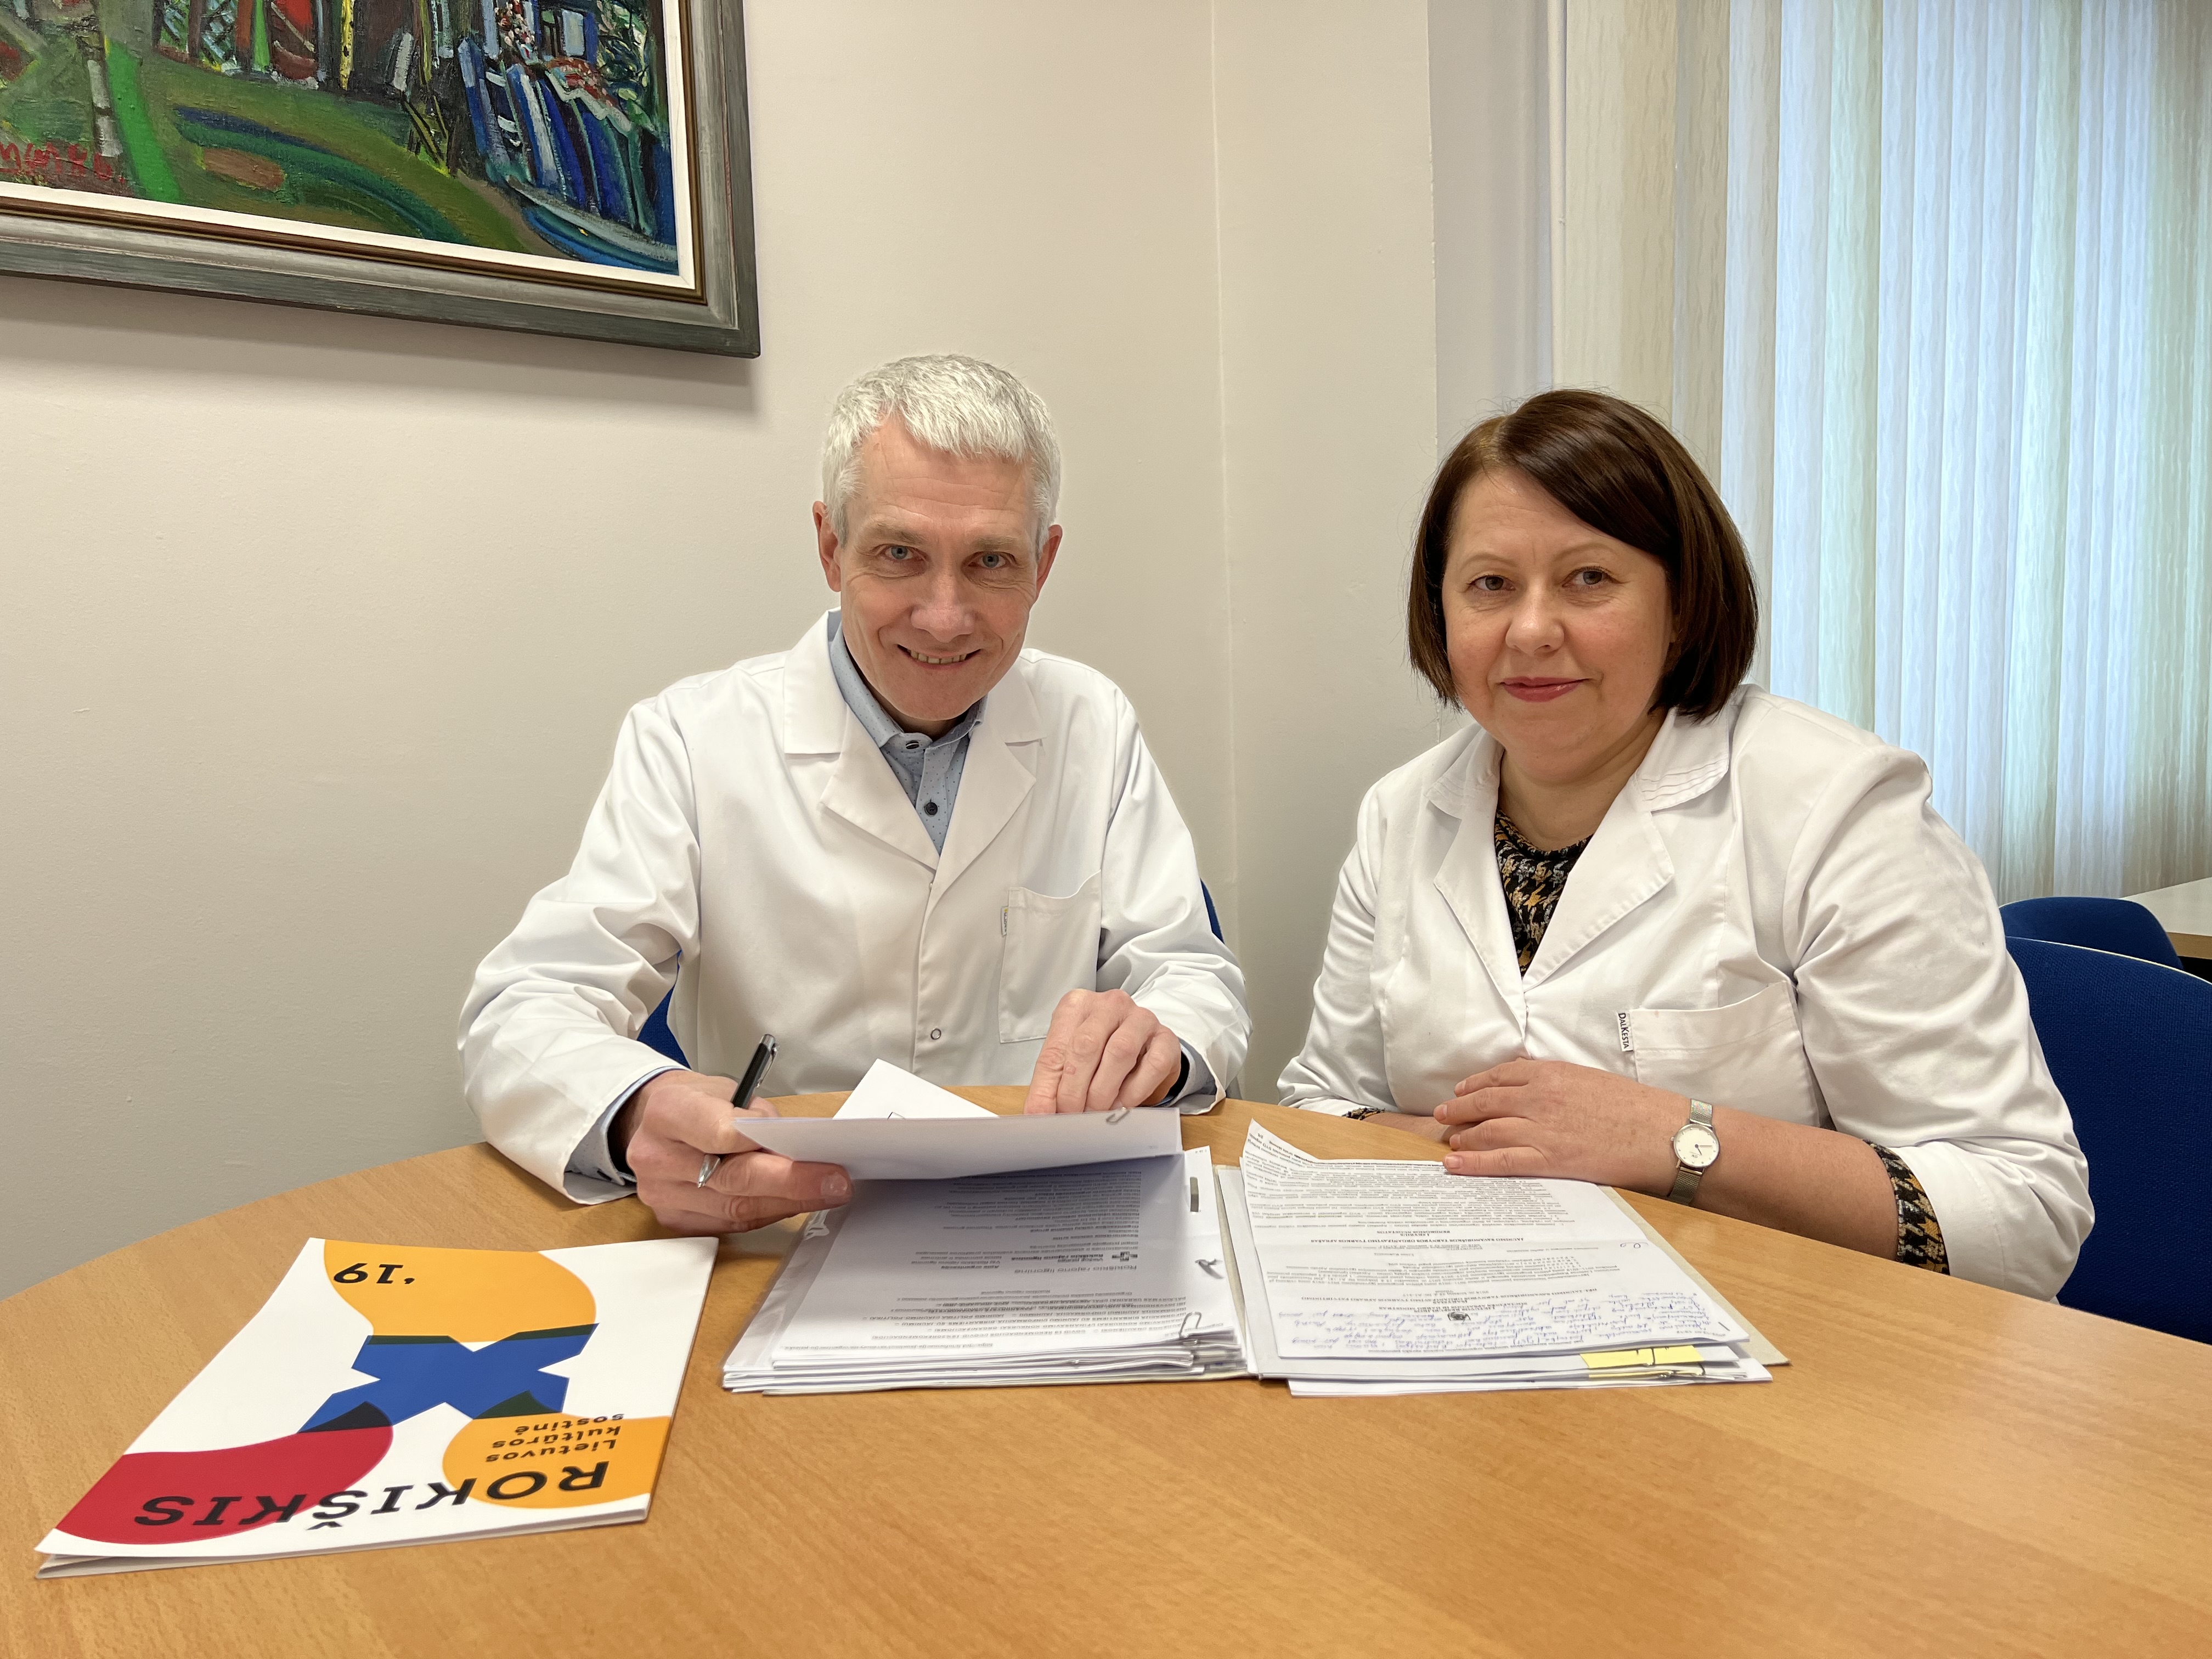 Rokiškio rajono ligoninė kviečia savanoriauti norintį jaunimą